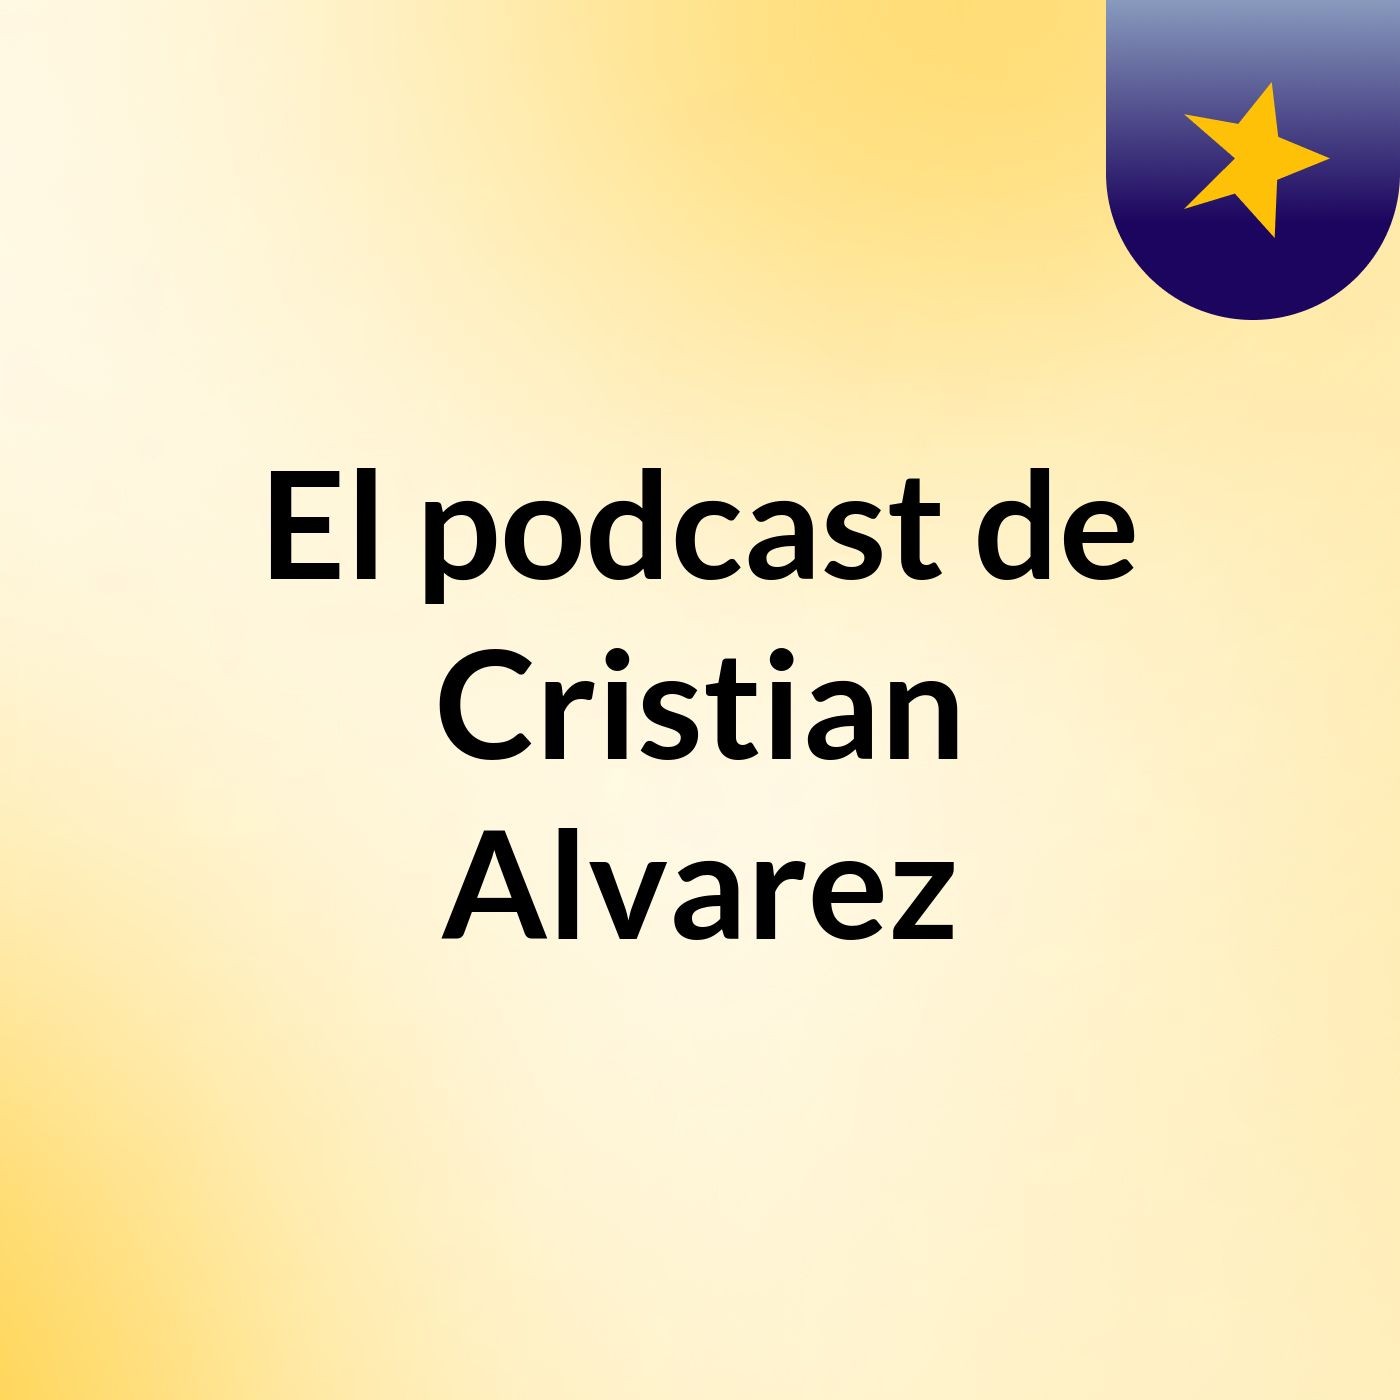 El podcast de Cristian Alvarez